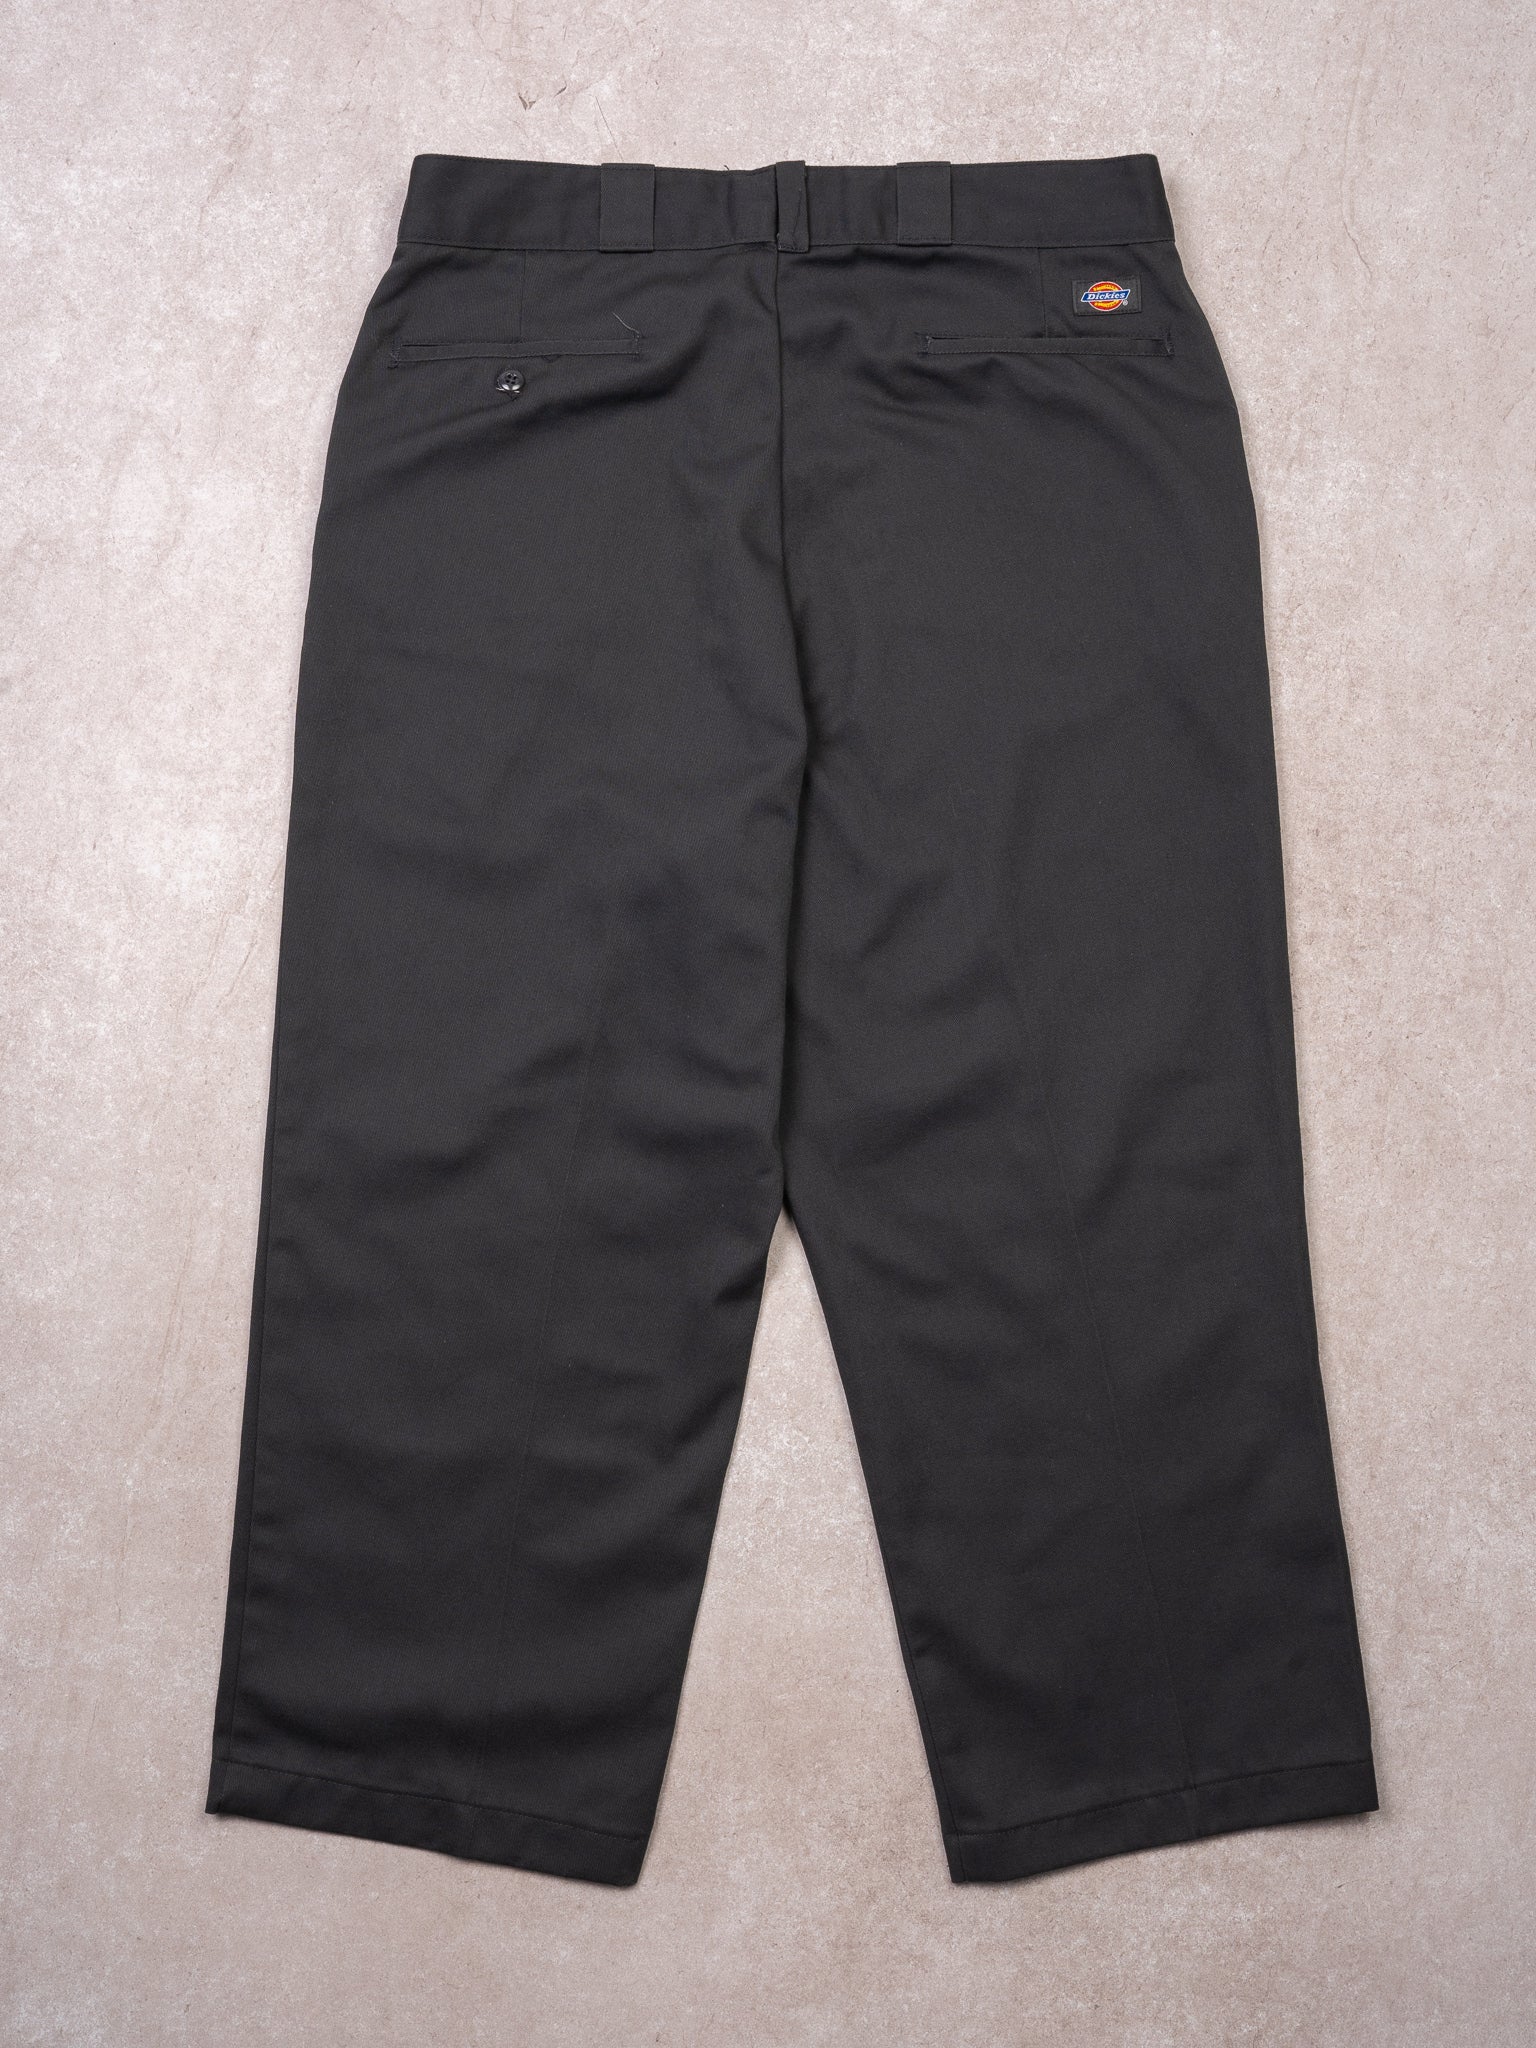 Vintage 90s Grey Dickies Workwear Pants (35 x 24)